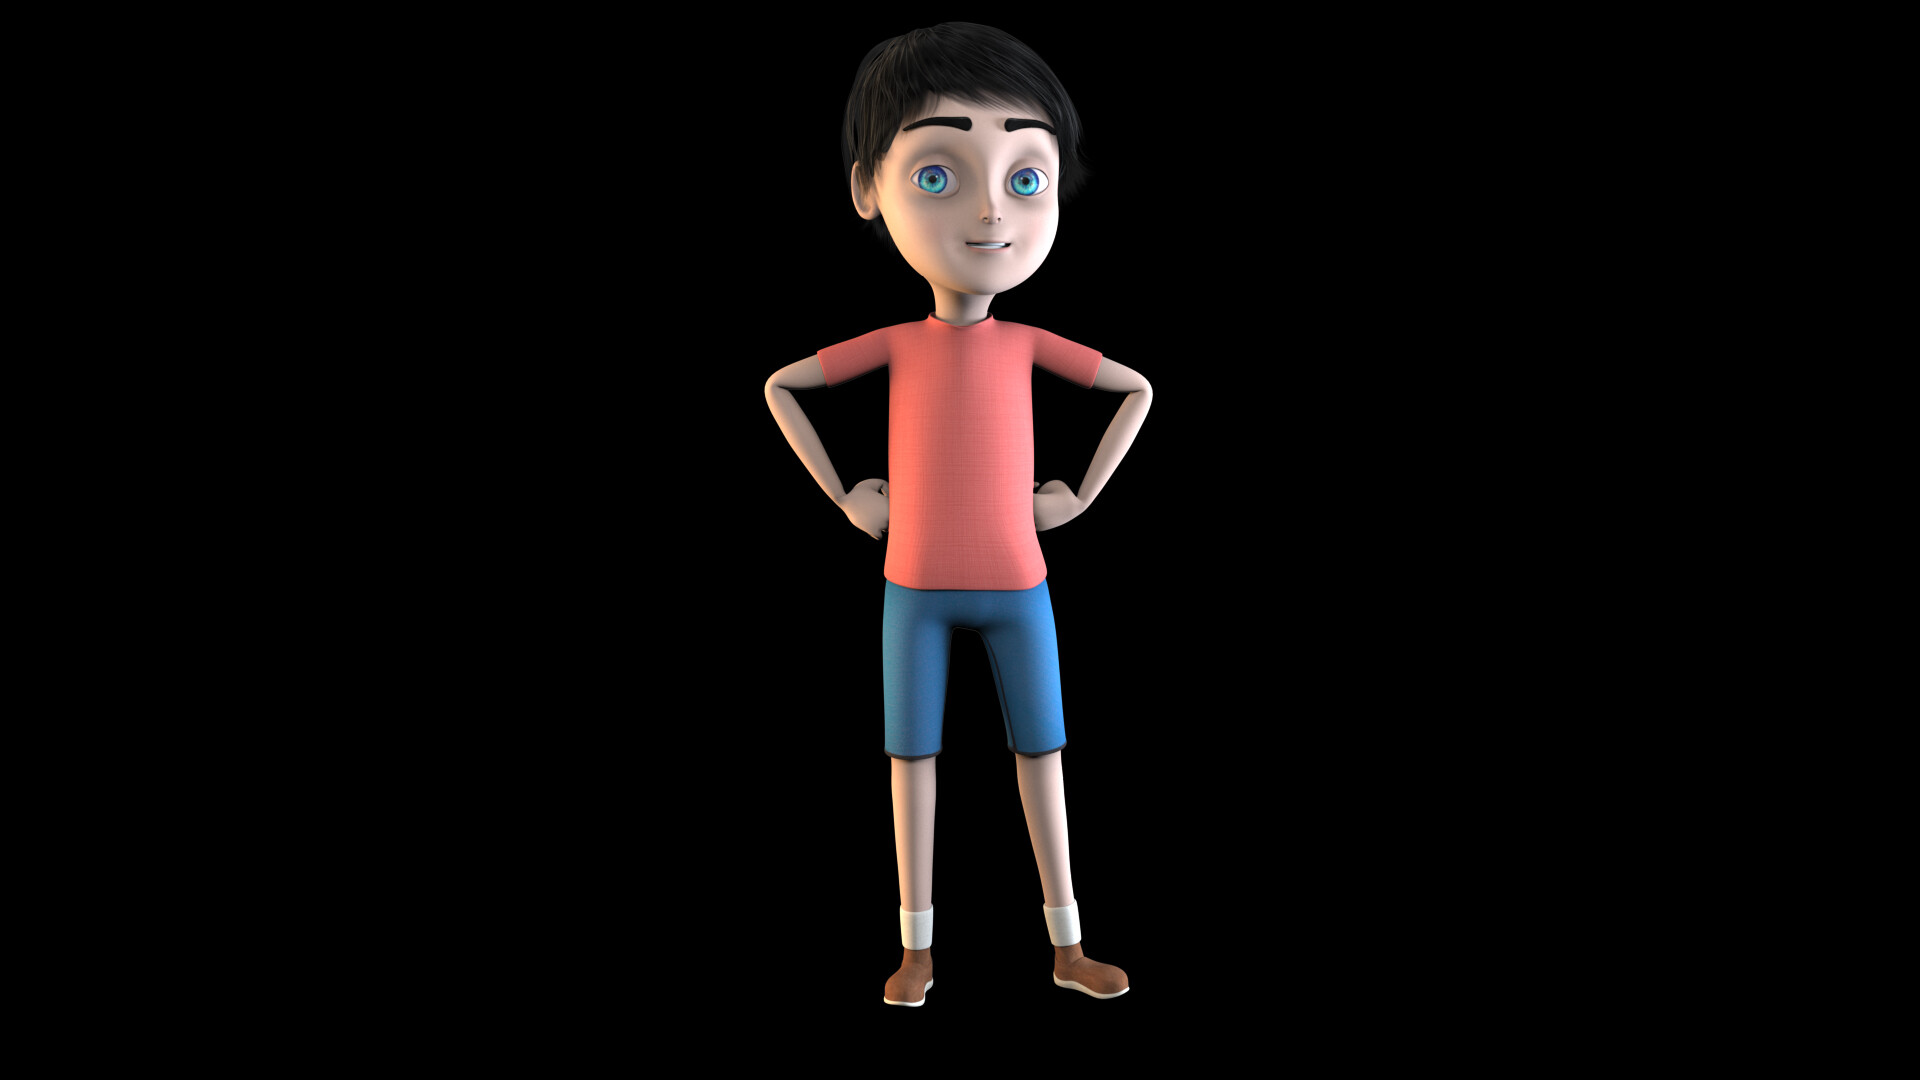 ArtStation - 3D character workflow